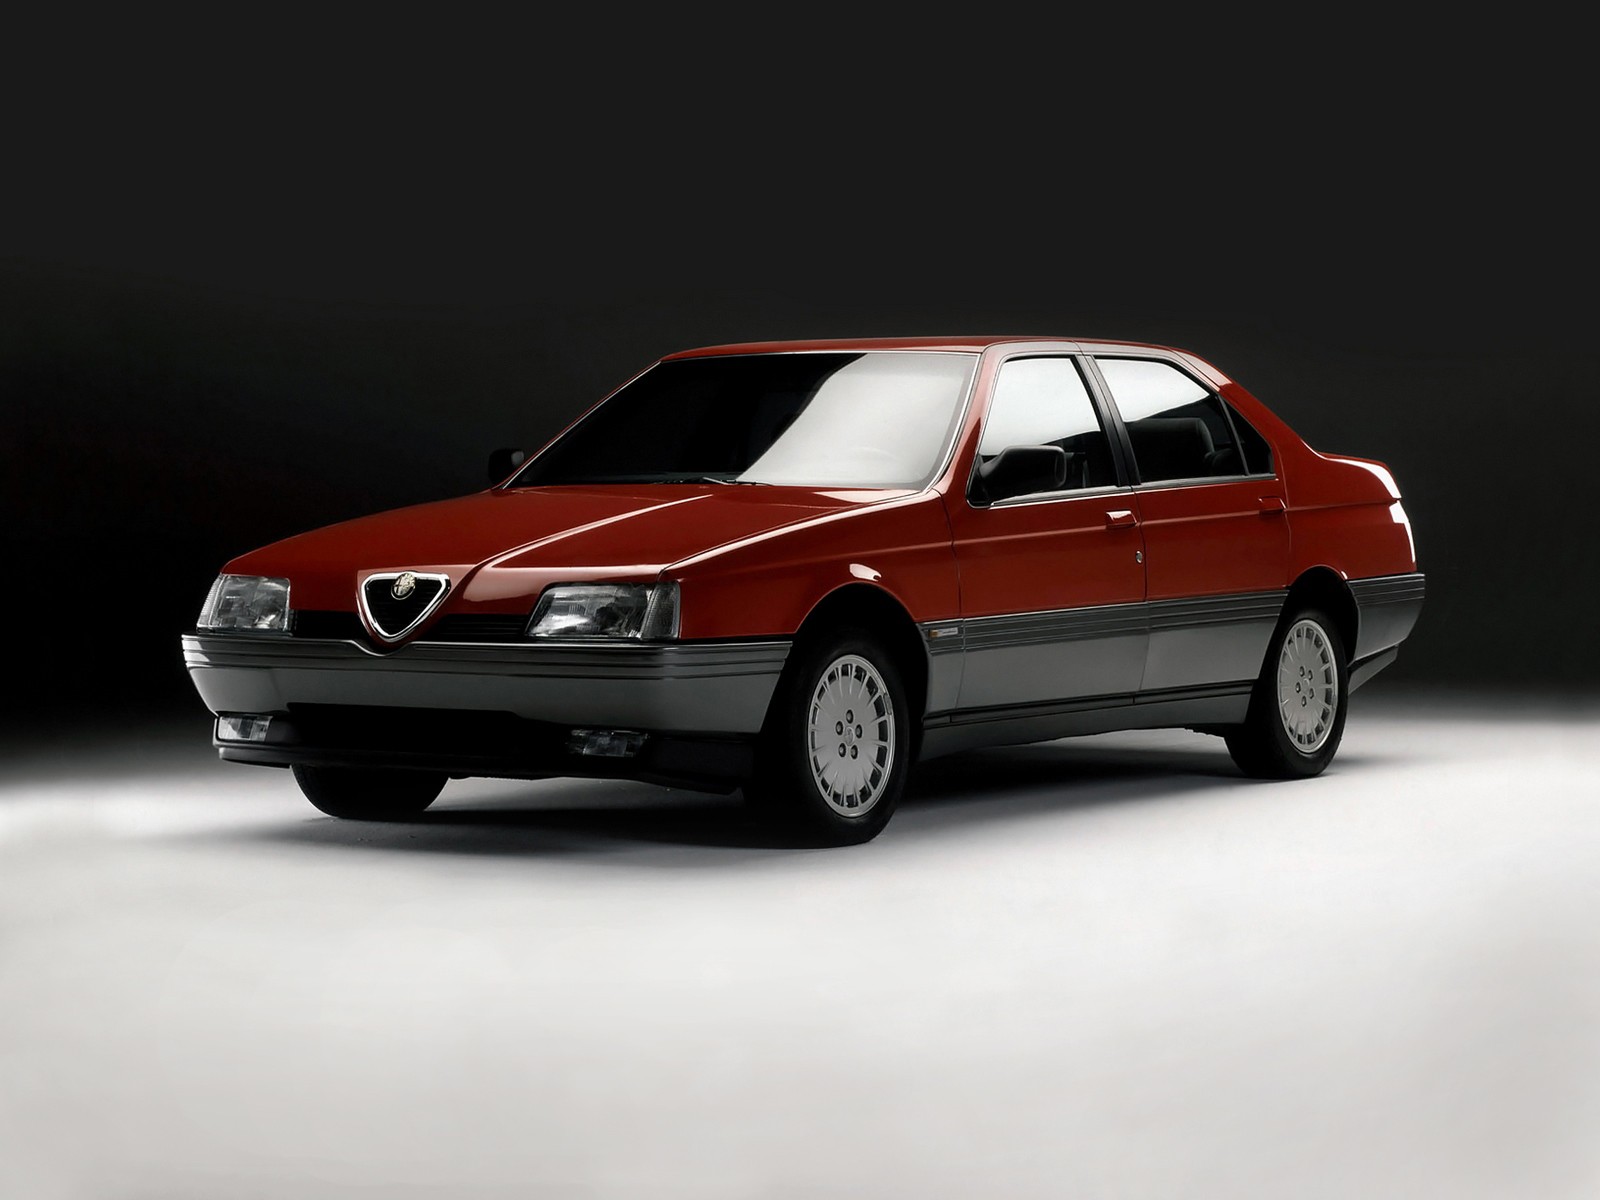 Alfa Romeo 164 - pulchra in multis